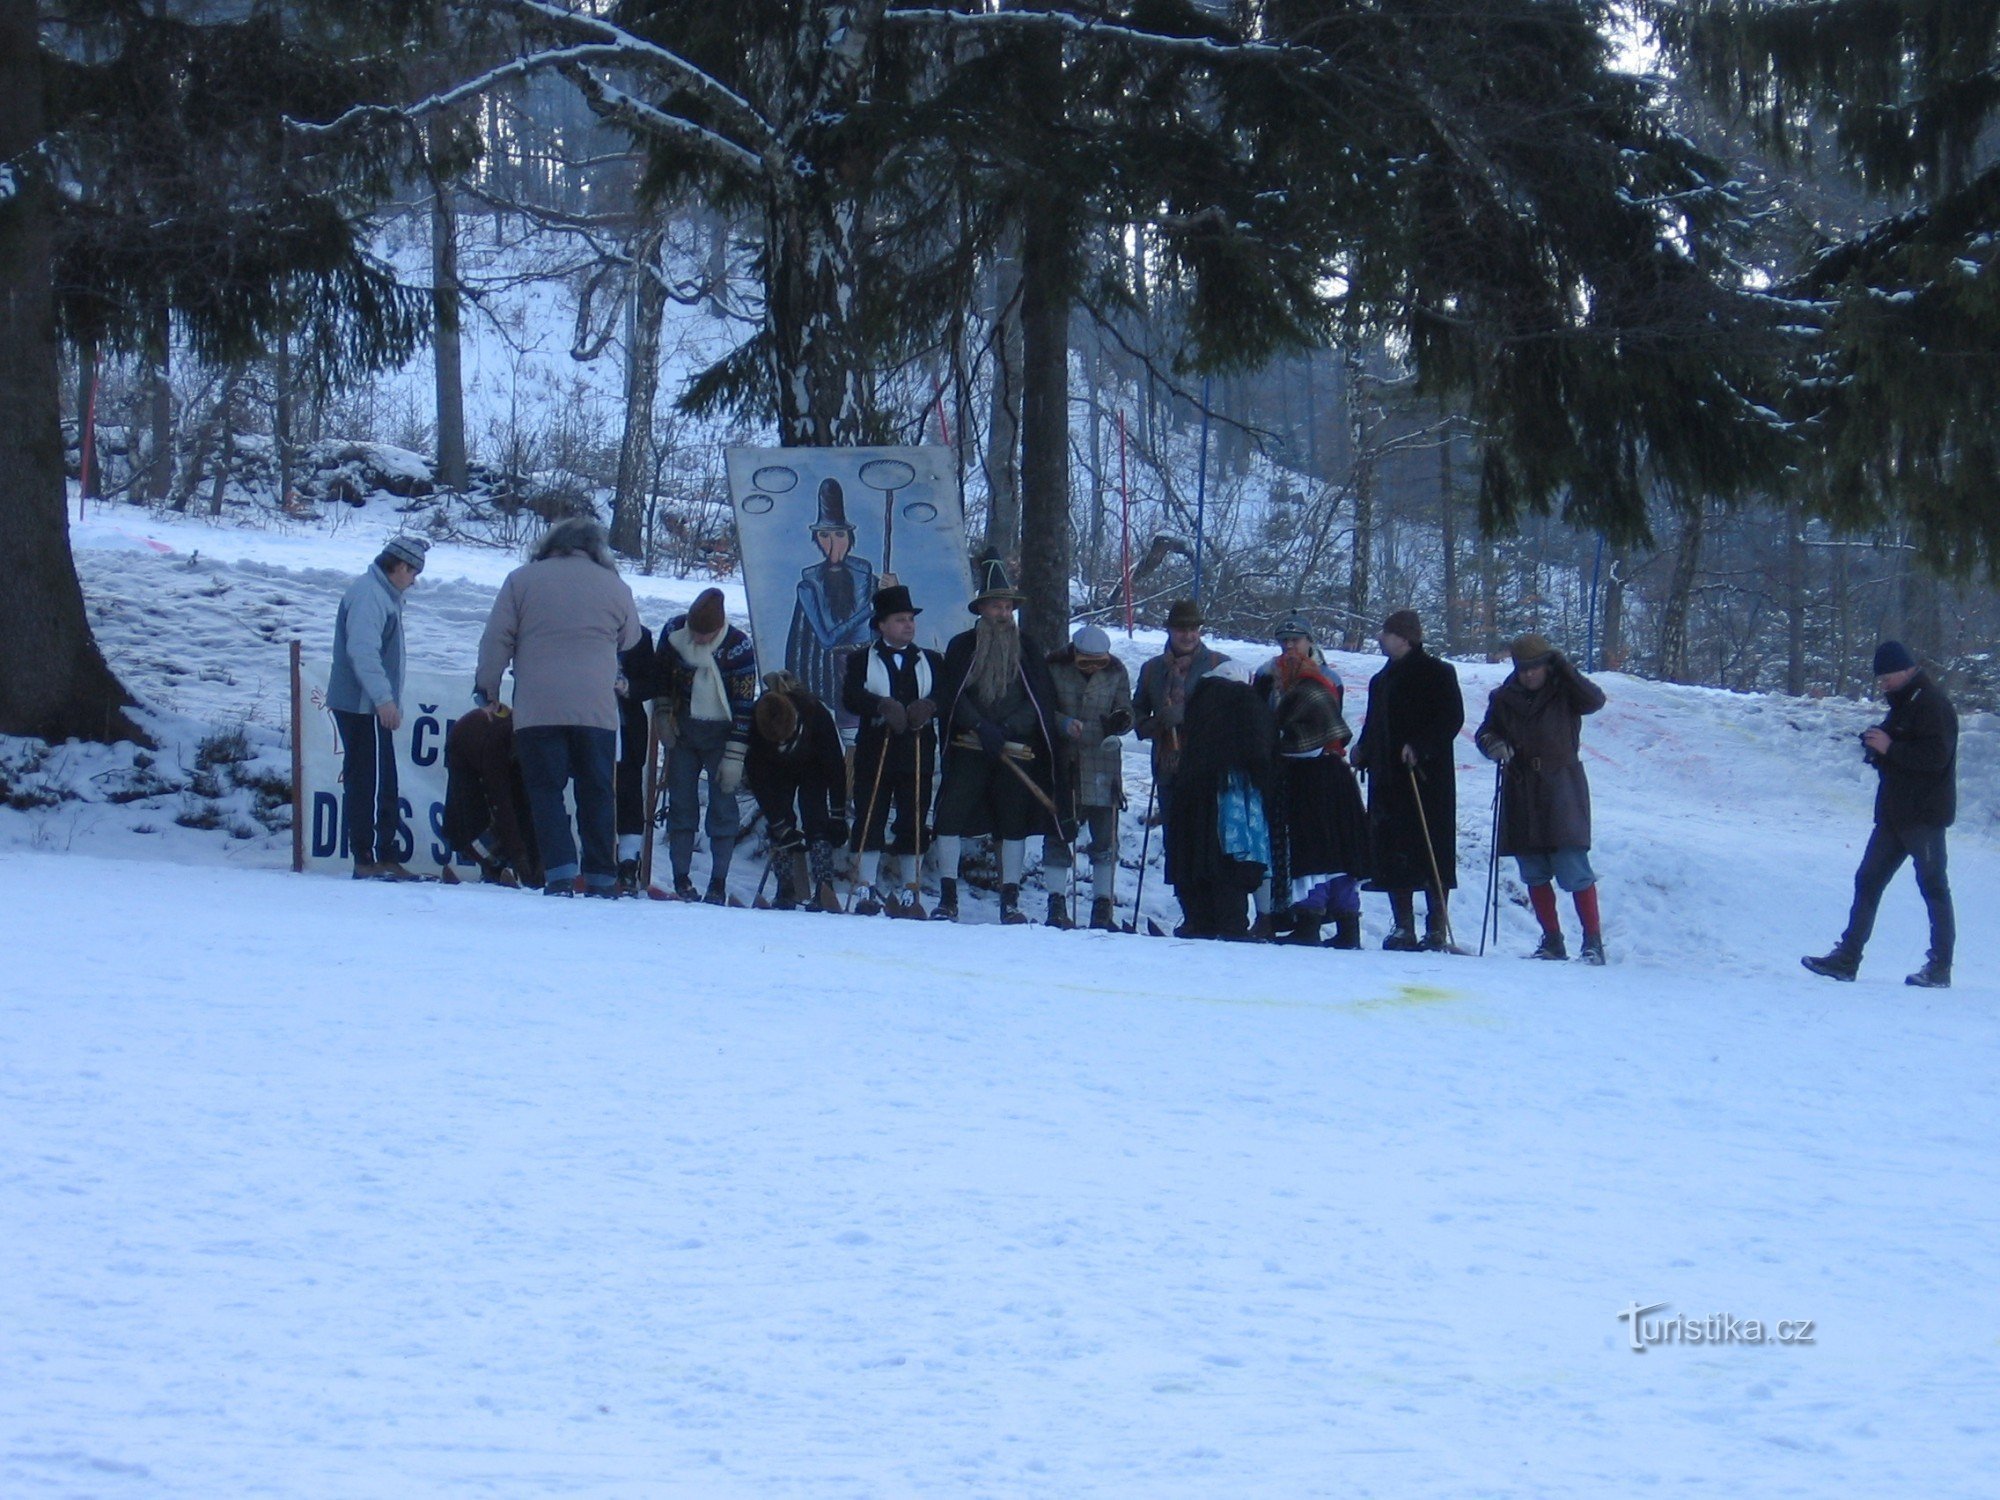 Karneval på skidor - Veřovice - januari 2012